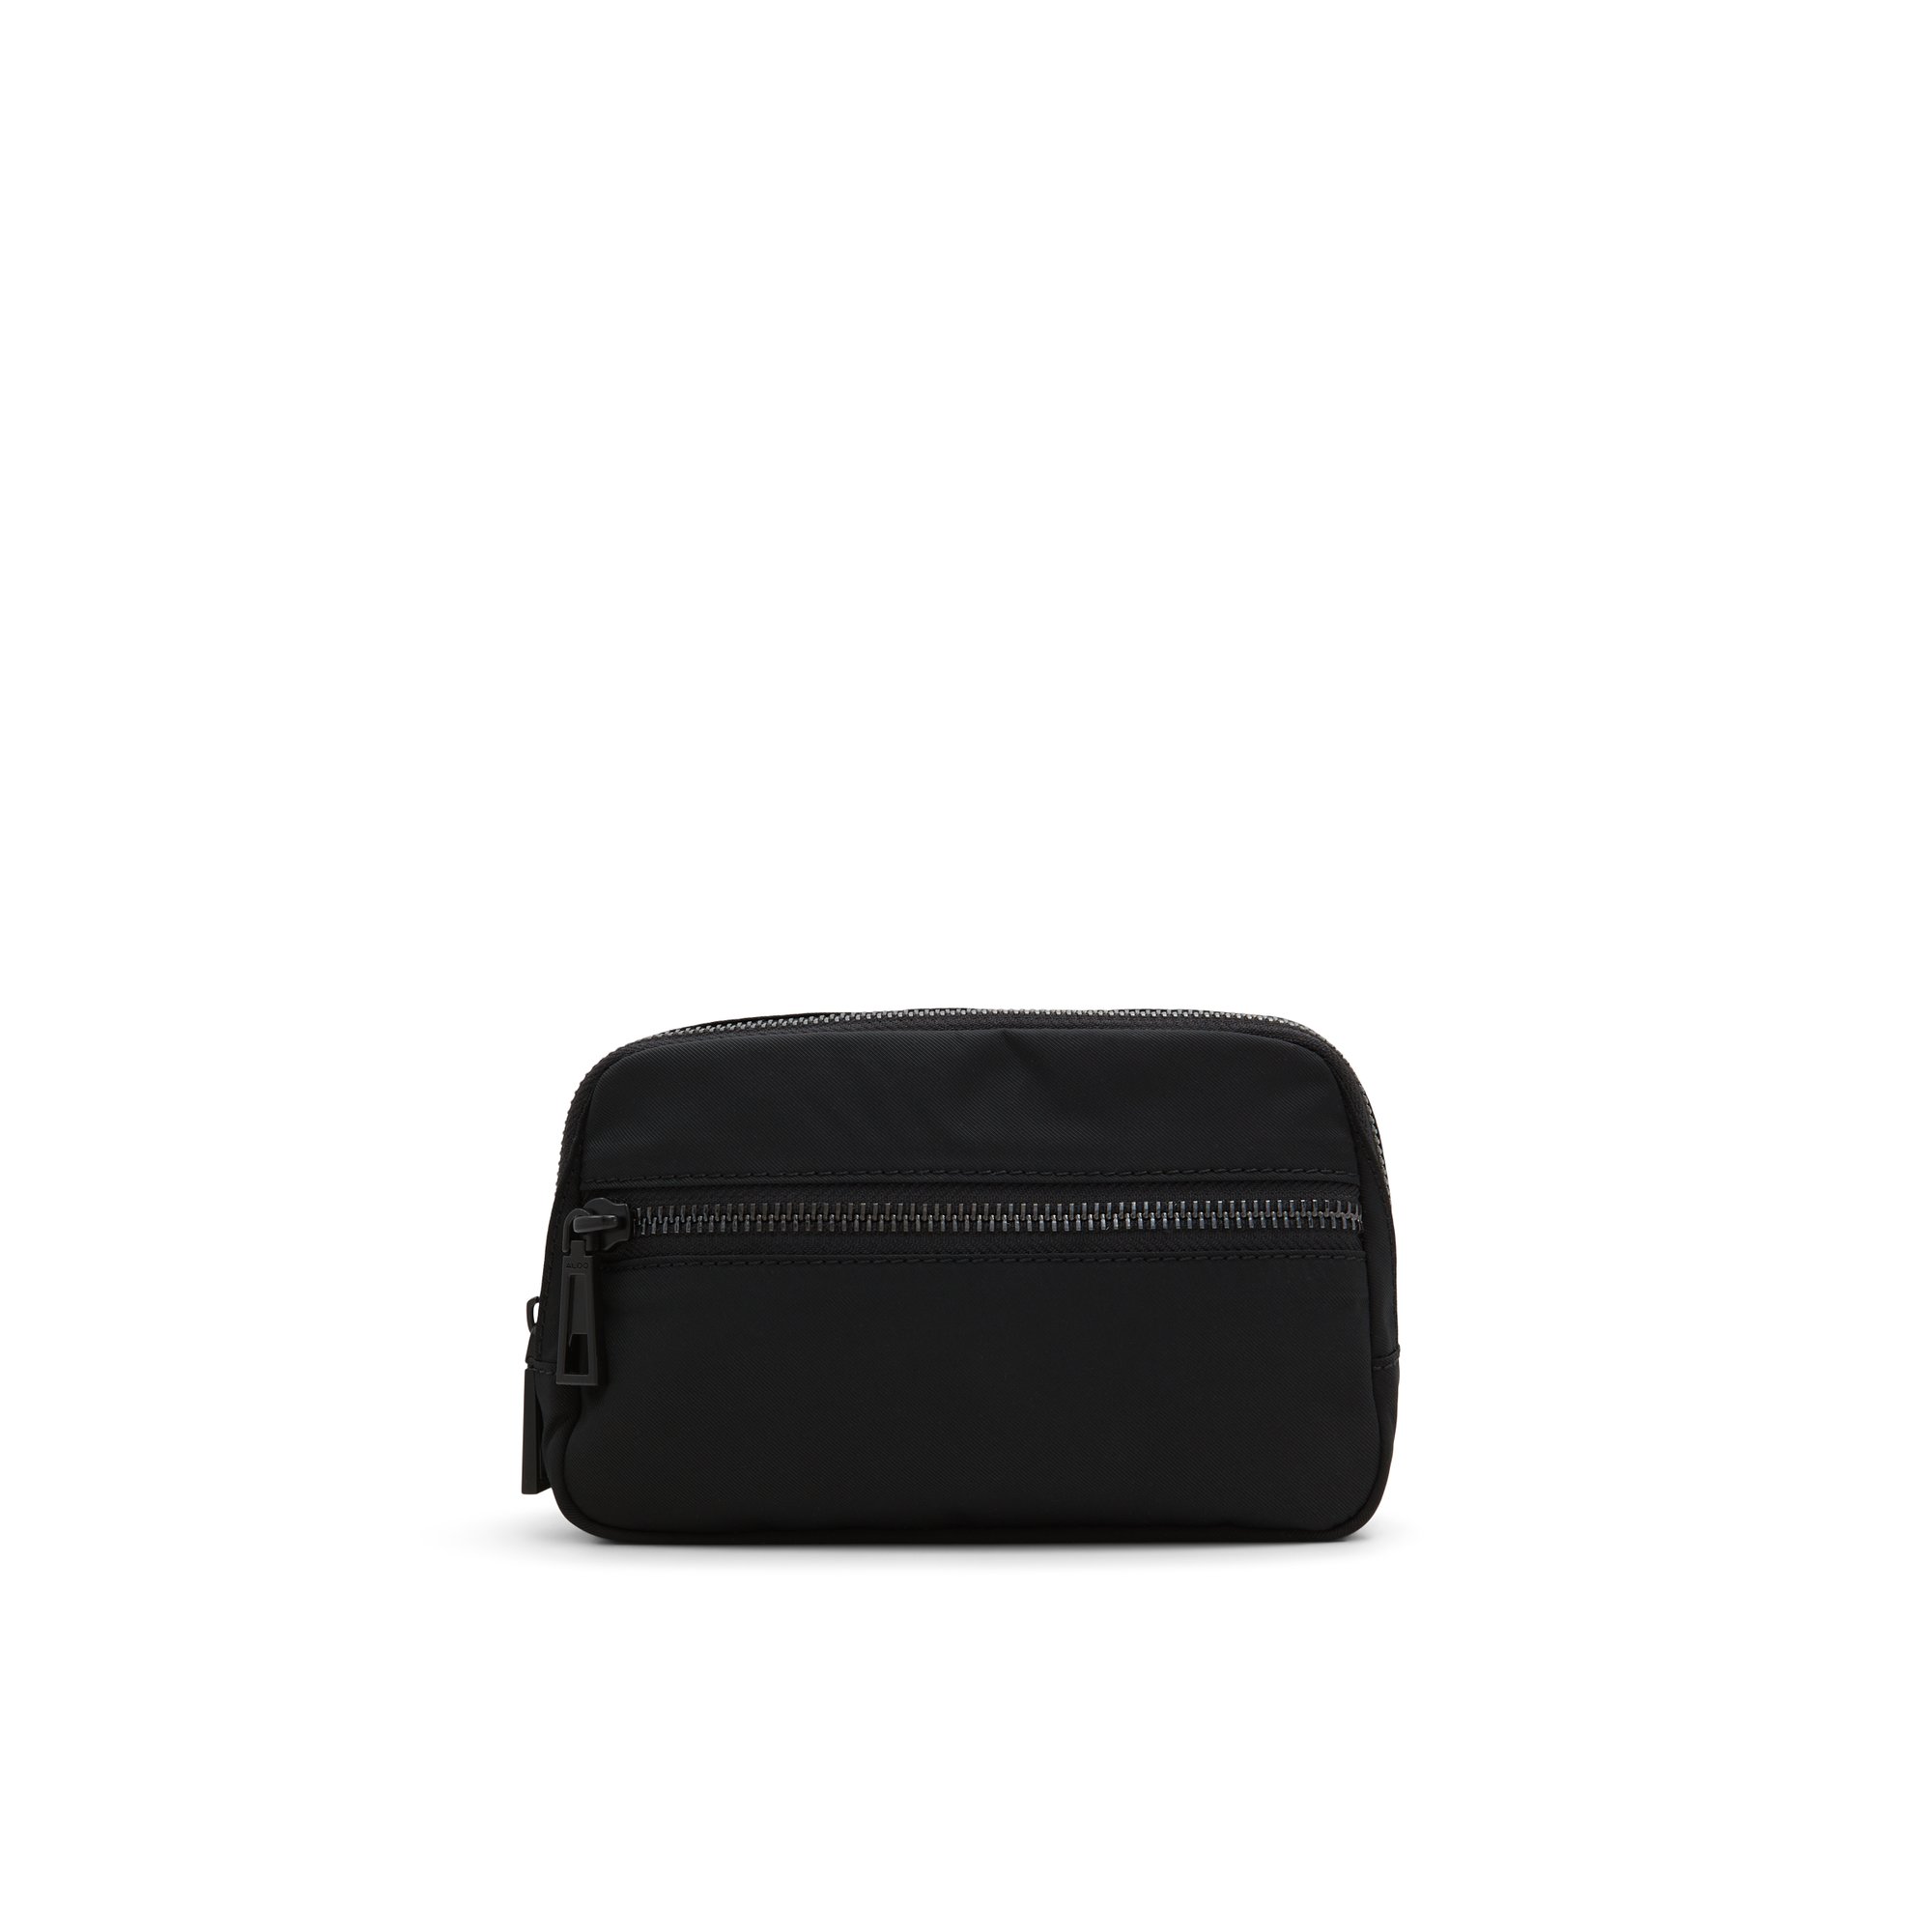 ALDO Alwaysonn - Women's Backpack Handbag - Black